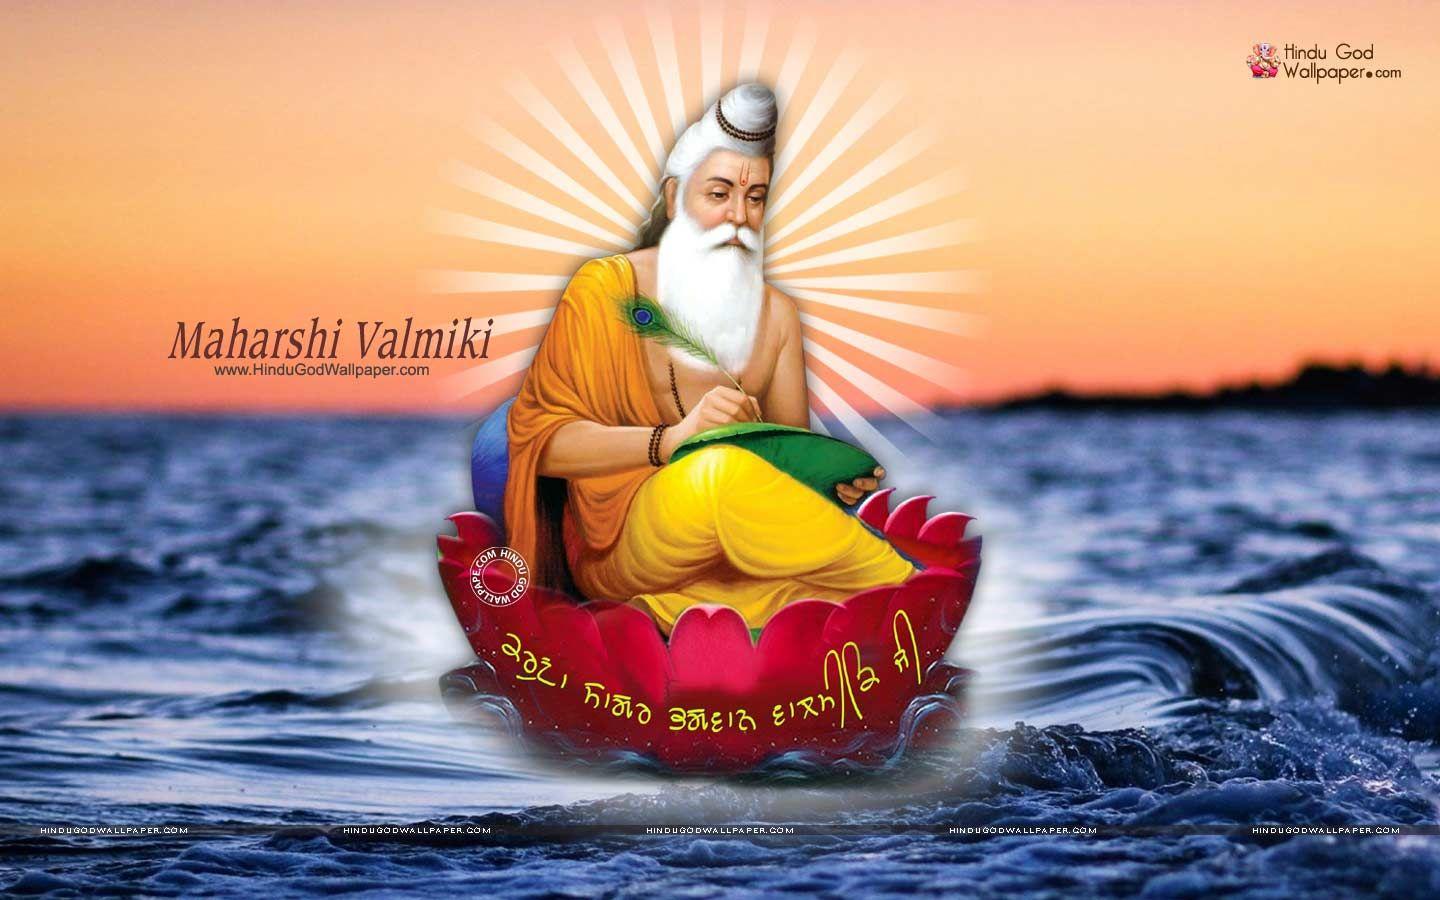 Free Maharishi Valmiki HD Image download with Bhagwan